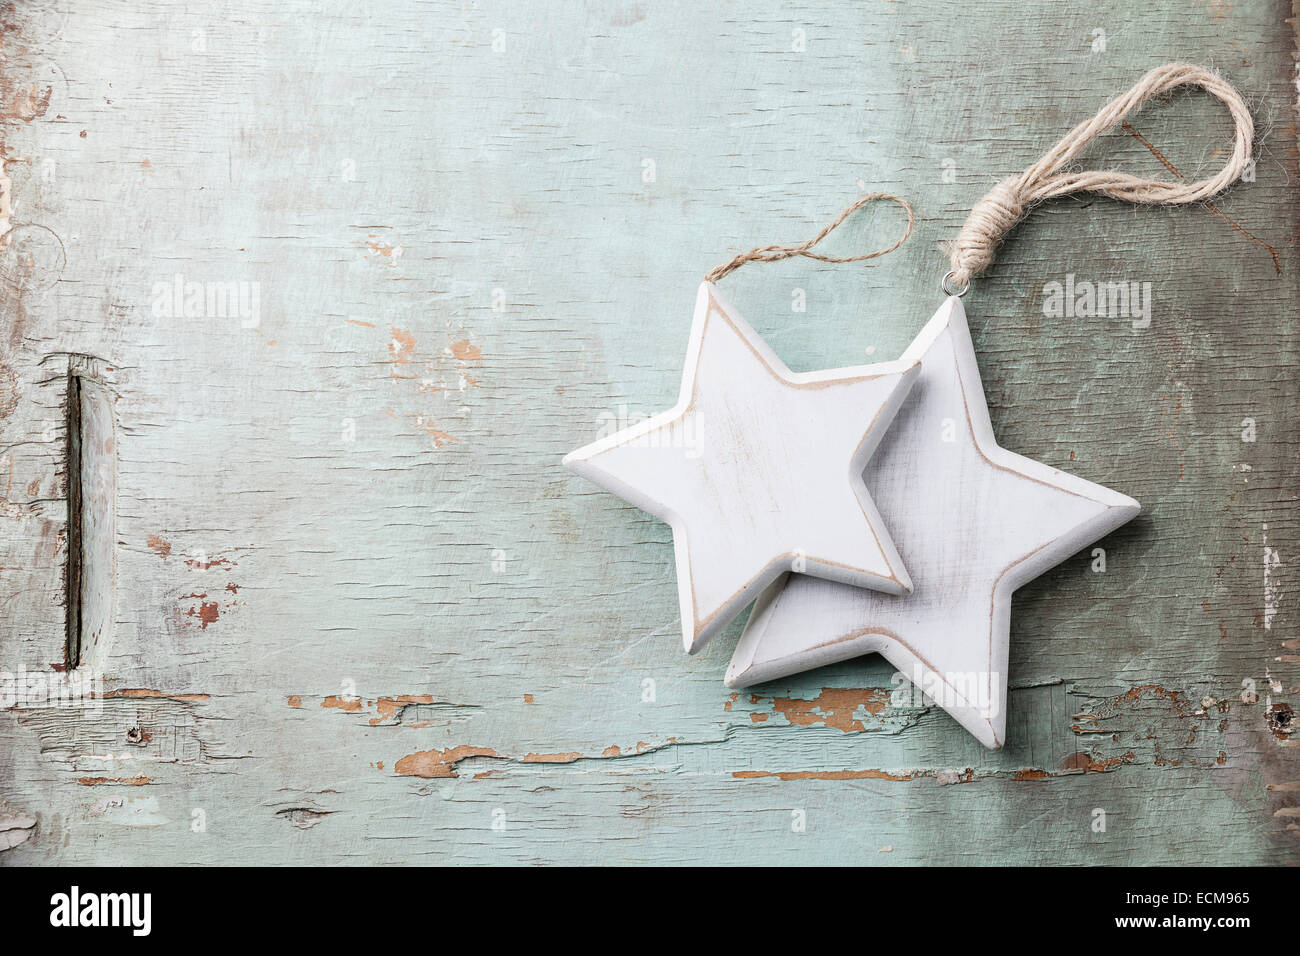 Adornos navideños de madera estrellas sobre fondo de textura azul Foto de stock